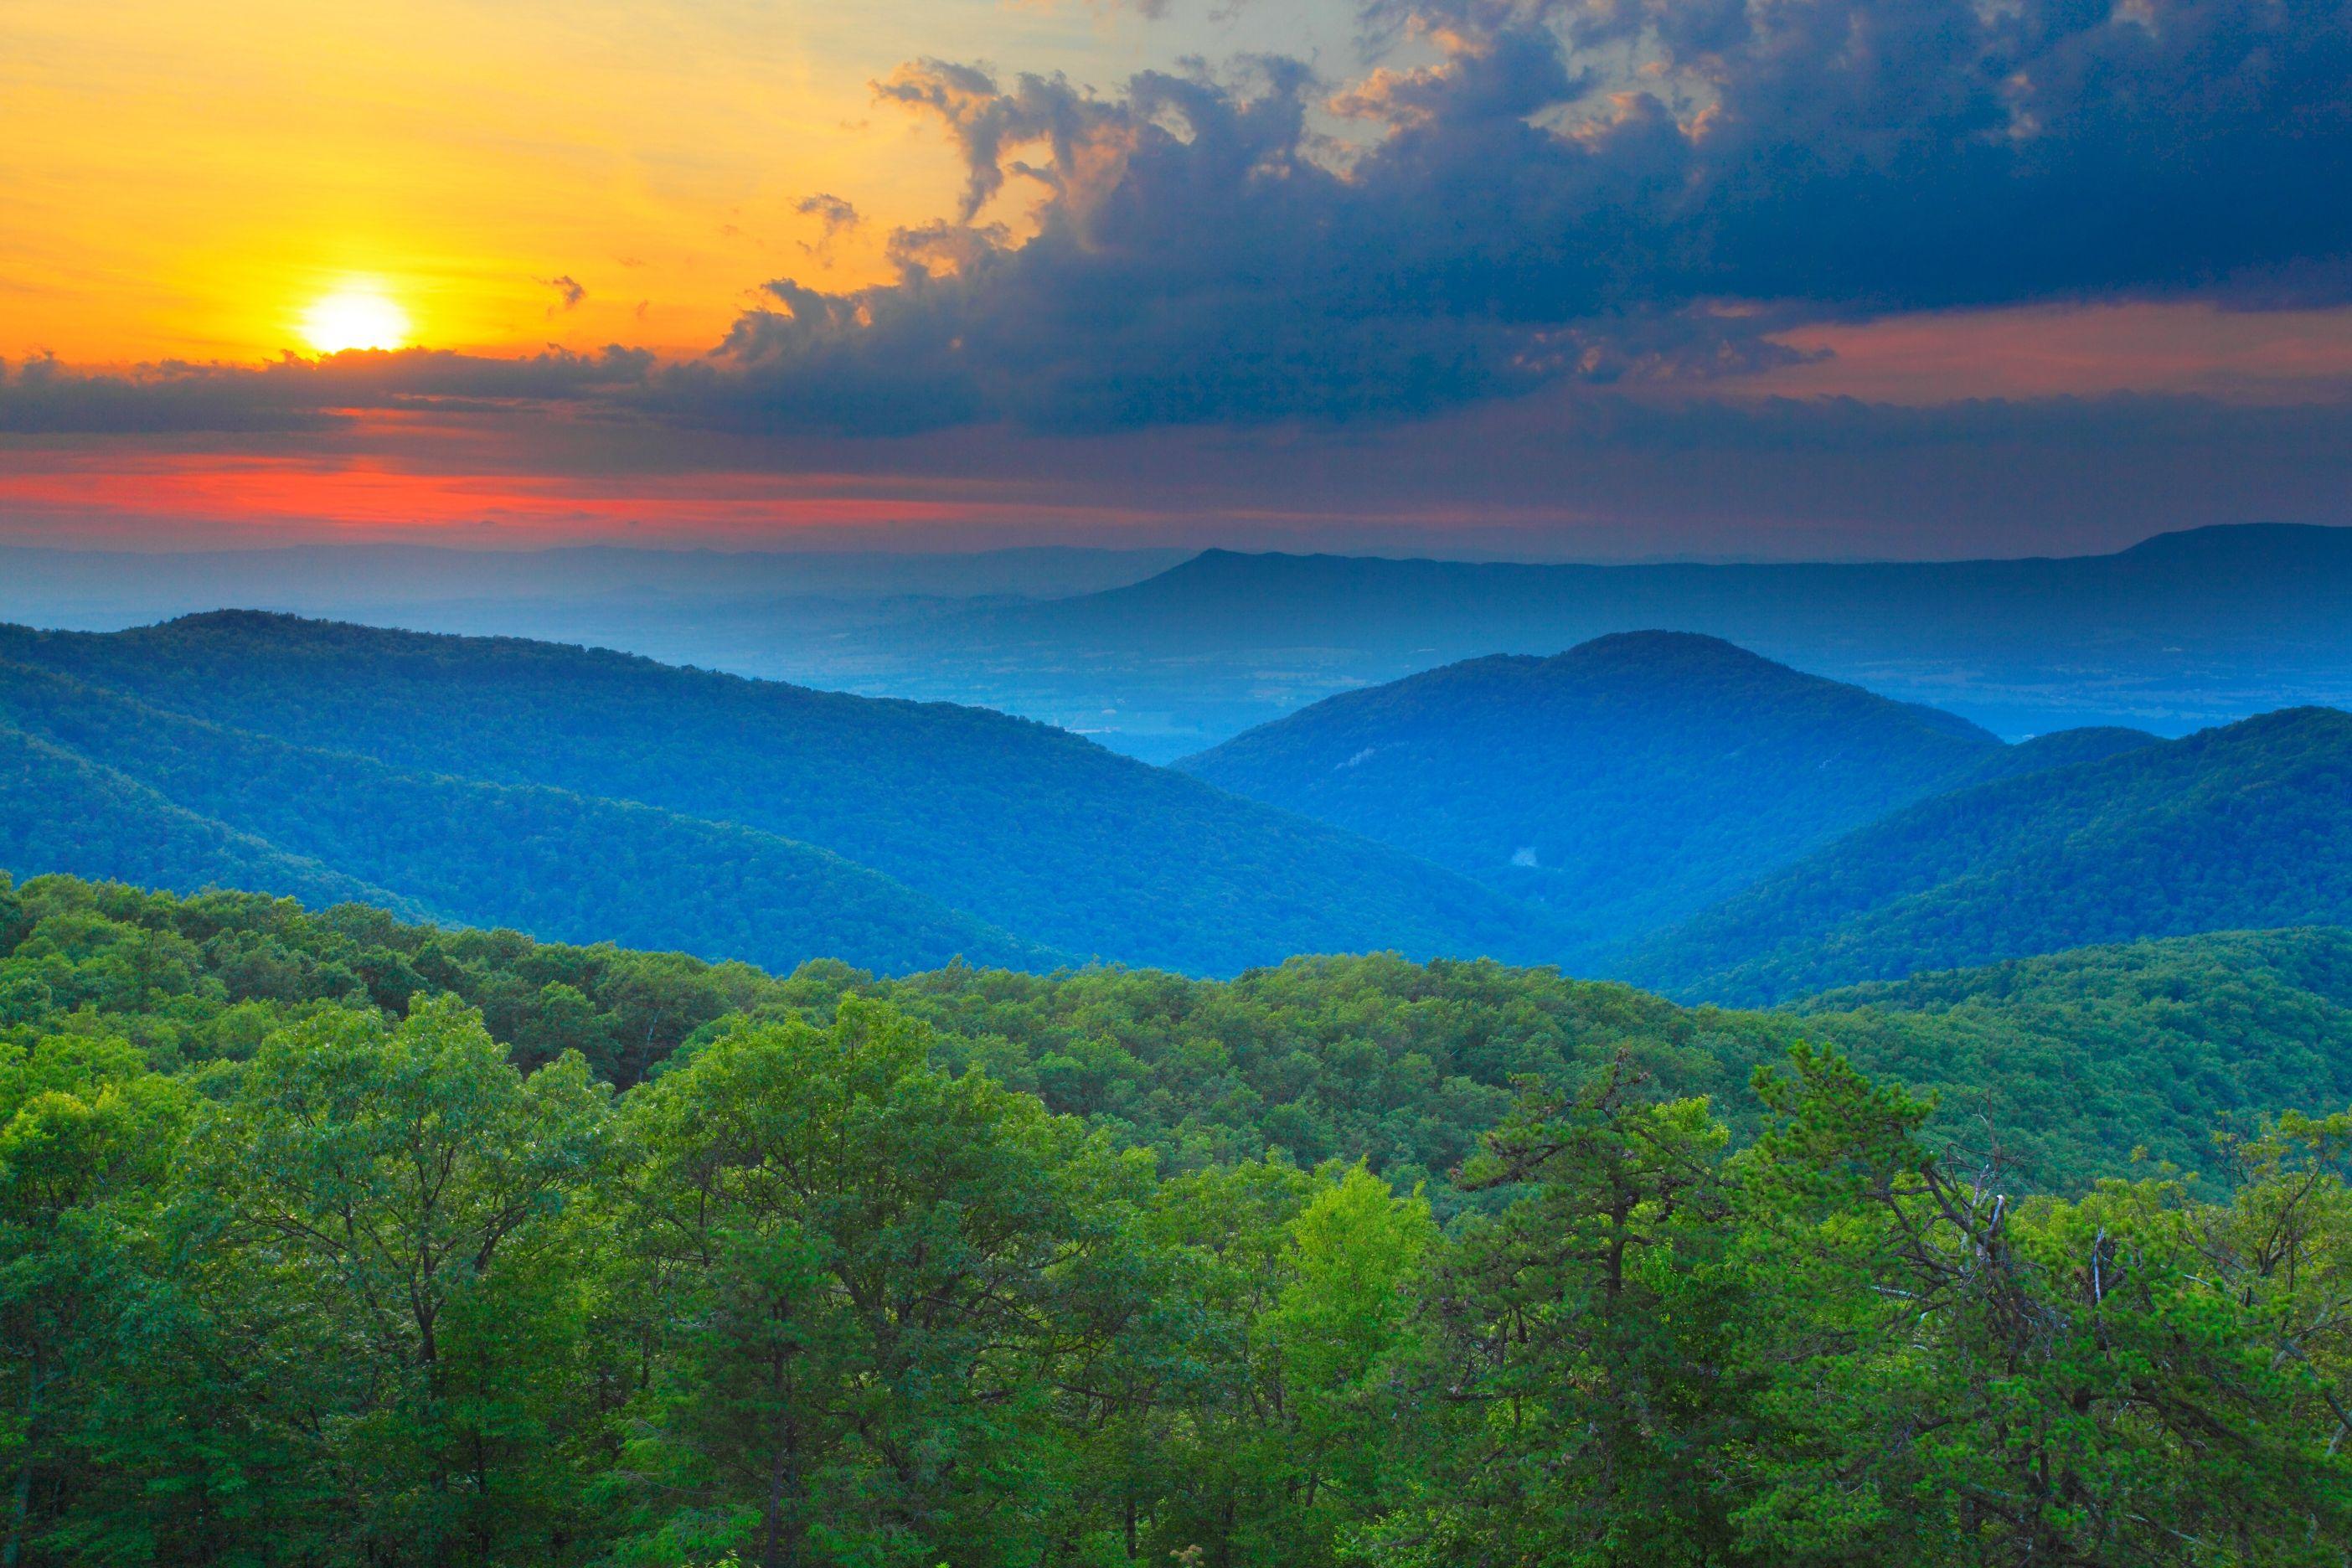 Blue Ridge Mountain Range Logo - Visit the 7 Natural Wonders of Virginia's Blue Ridge Mountains